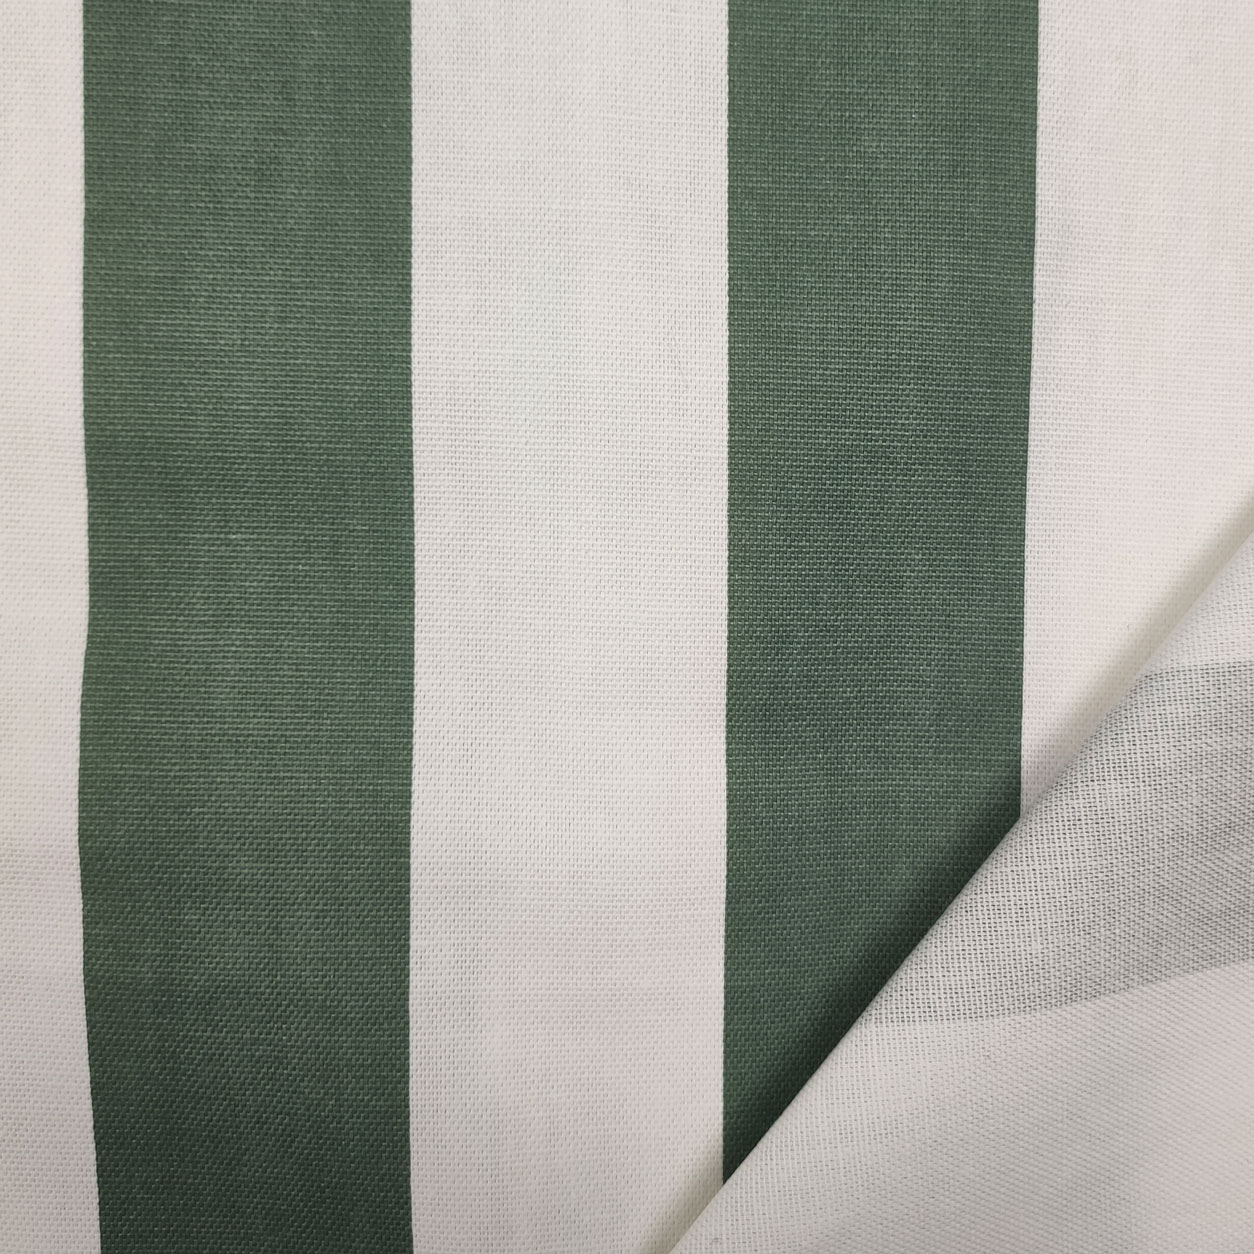 tessuto-in-cotone-per-cuscini-righe-verdi